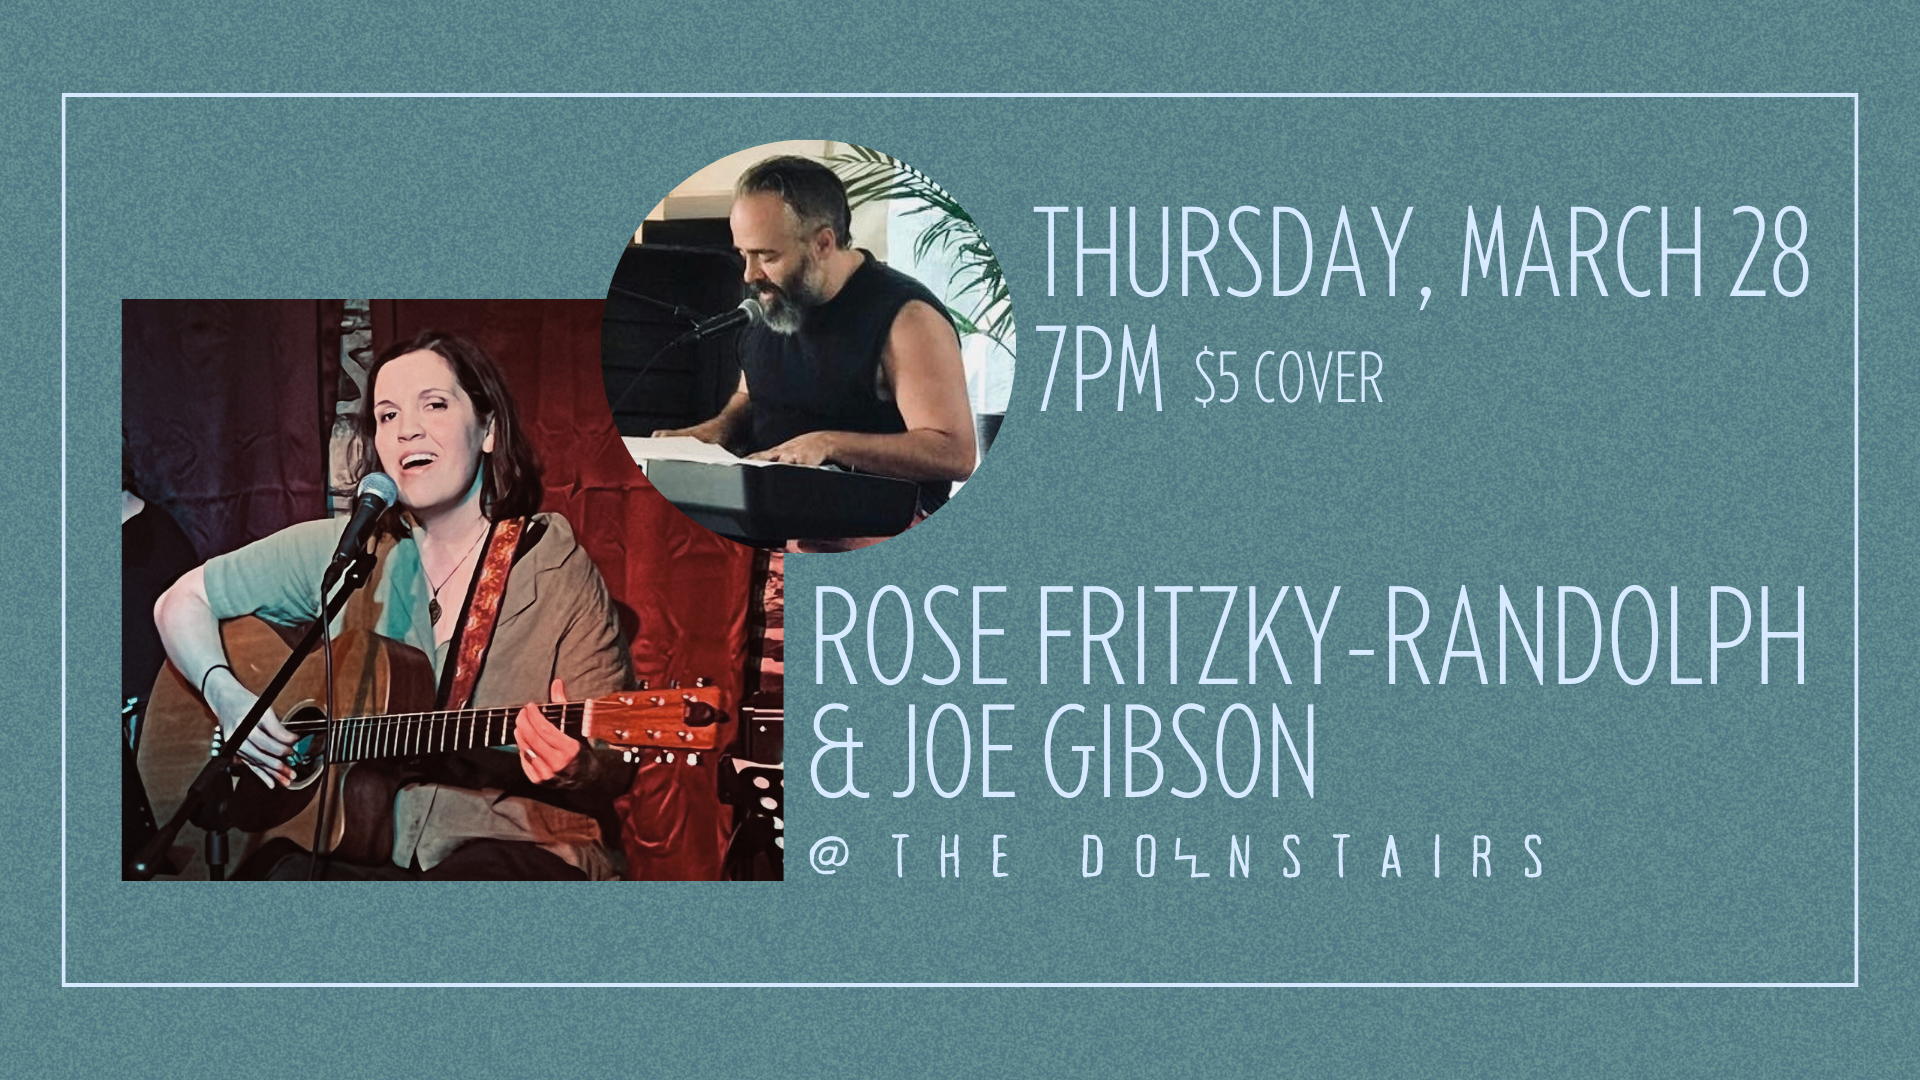 Rose Fritzky-Randolph & Joe Gibson